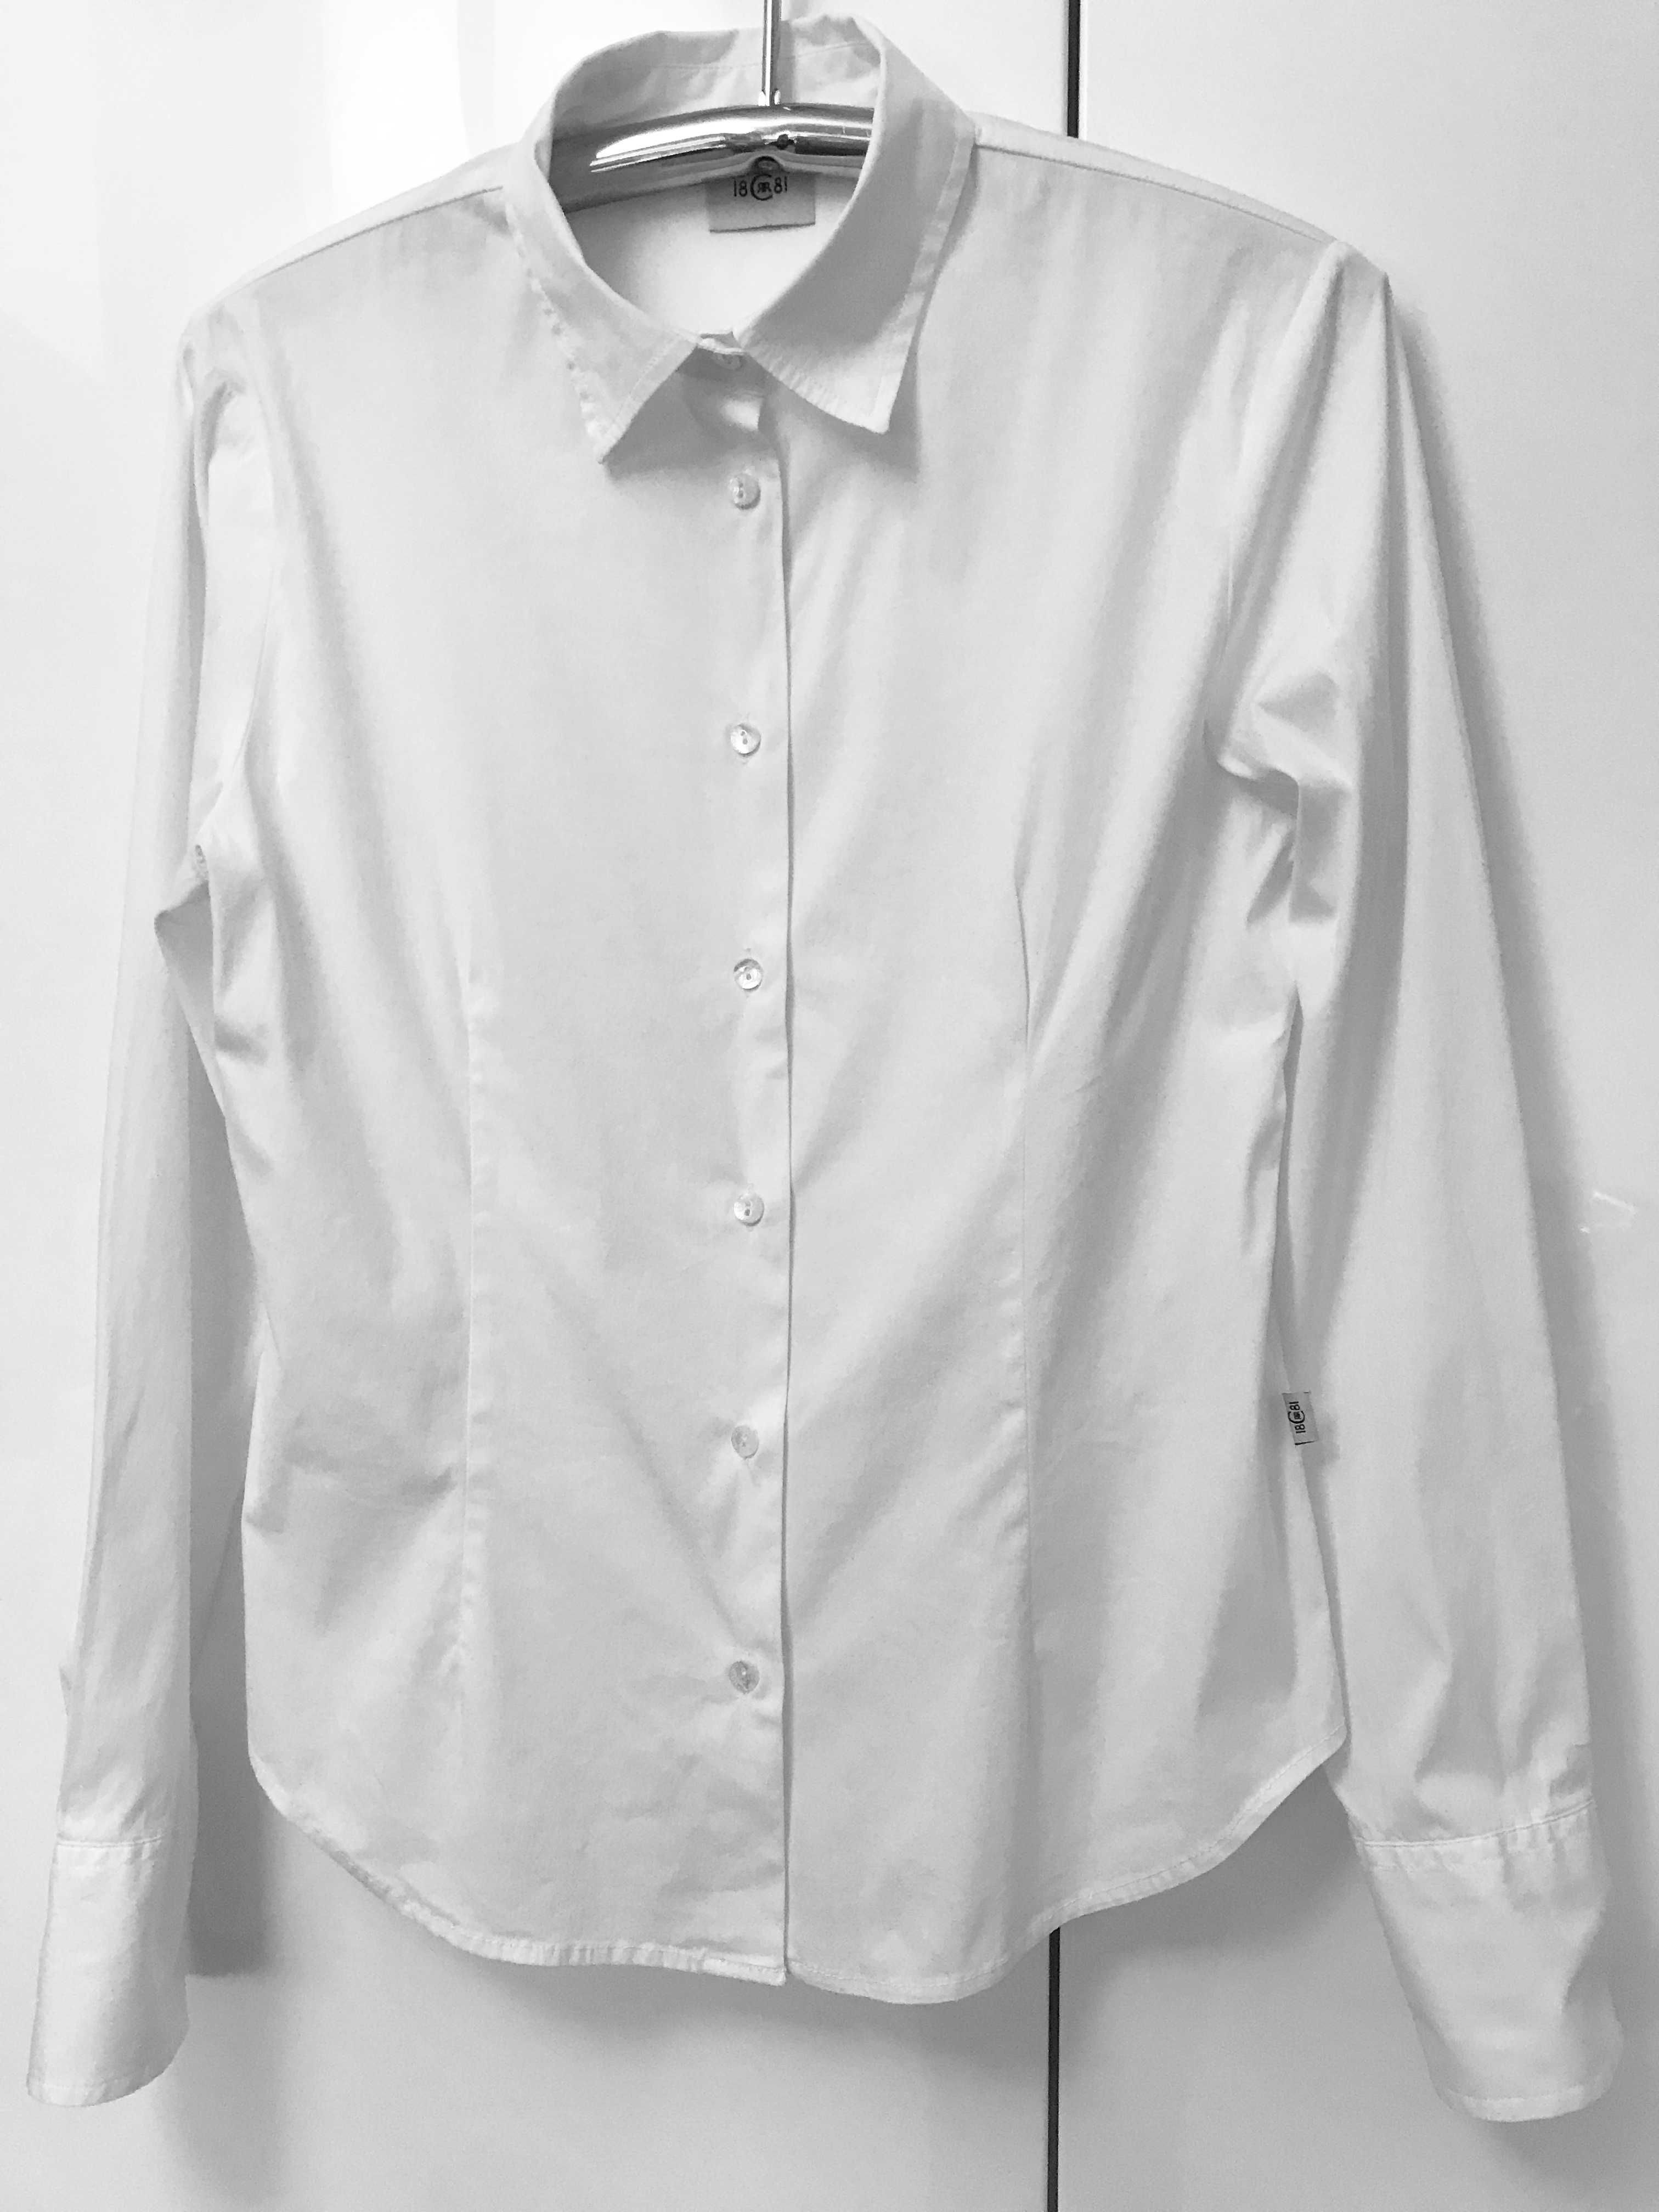 Biała koszula od renomowanej marki premium Cerruti 1881